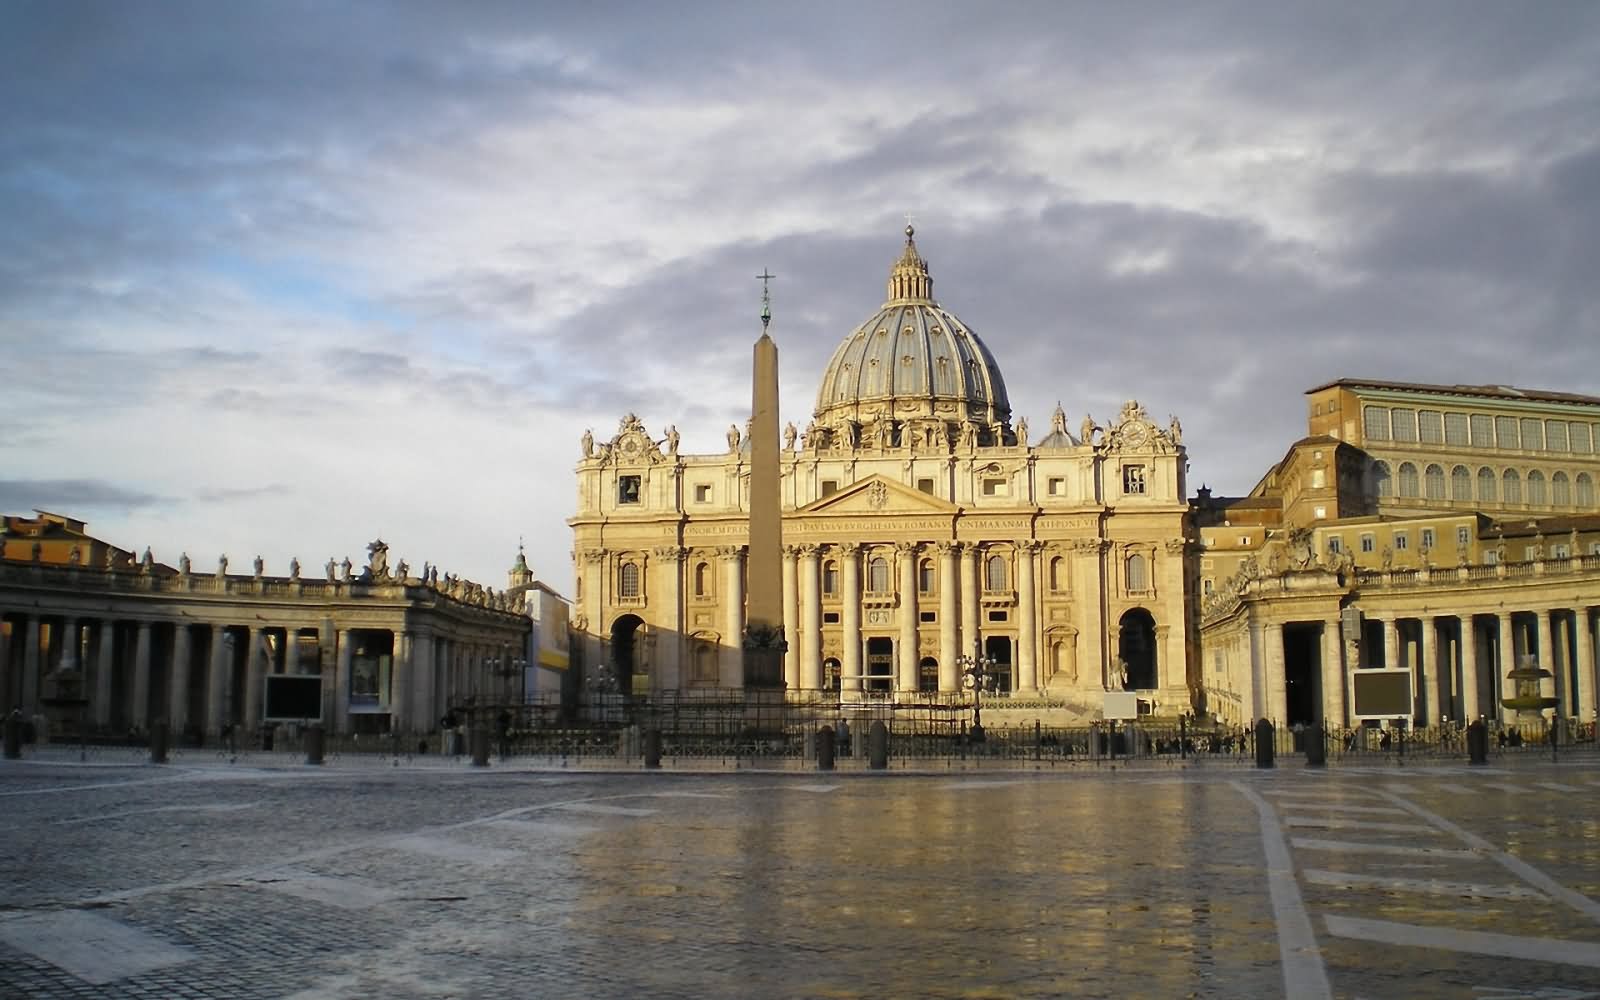 St. Peter's Basilica Facade Photo